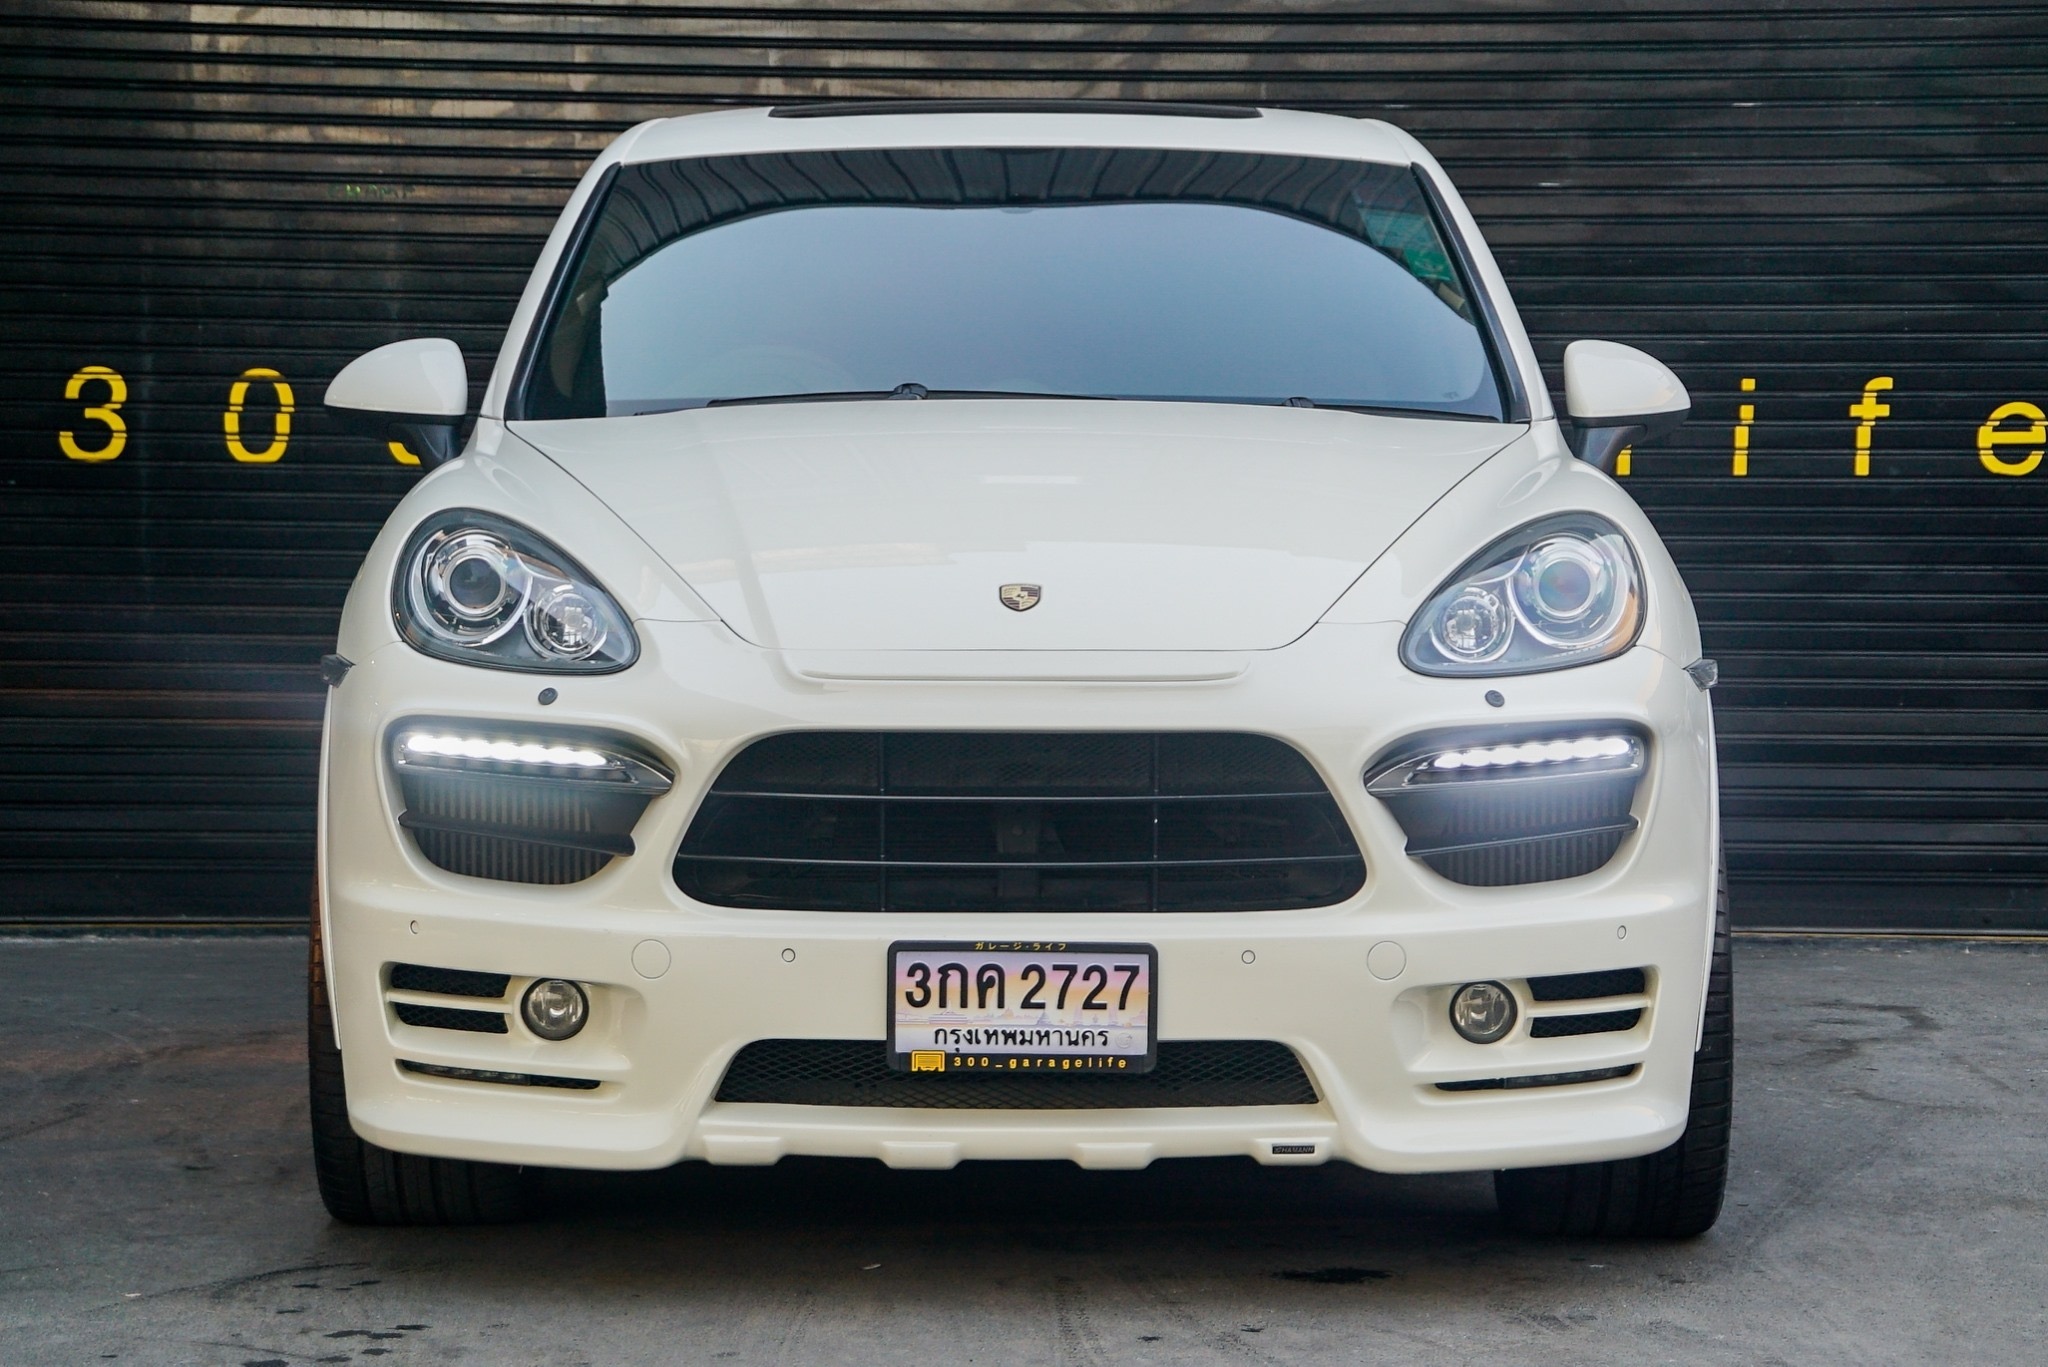 Porsche Cayenne ปี 2011 สีขาว